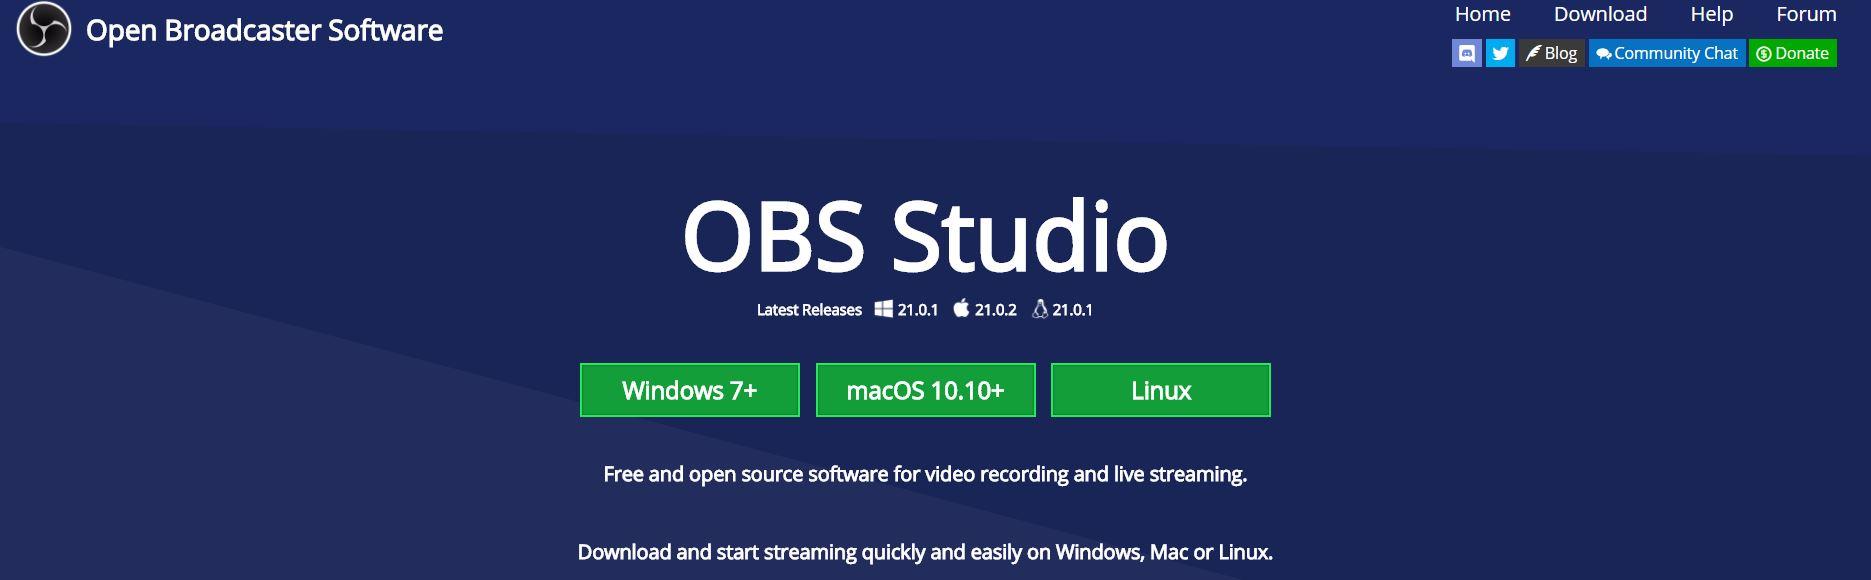 Cómo grabar la pantalla del PC - Imagen del sitio web de OBS Studio